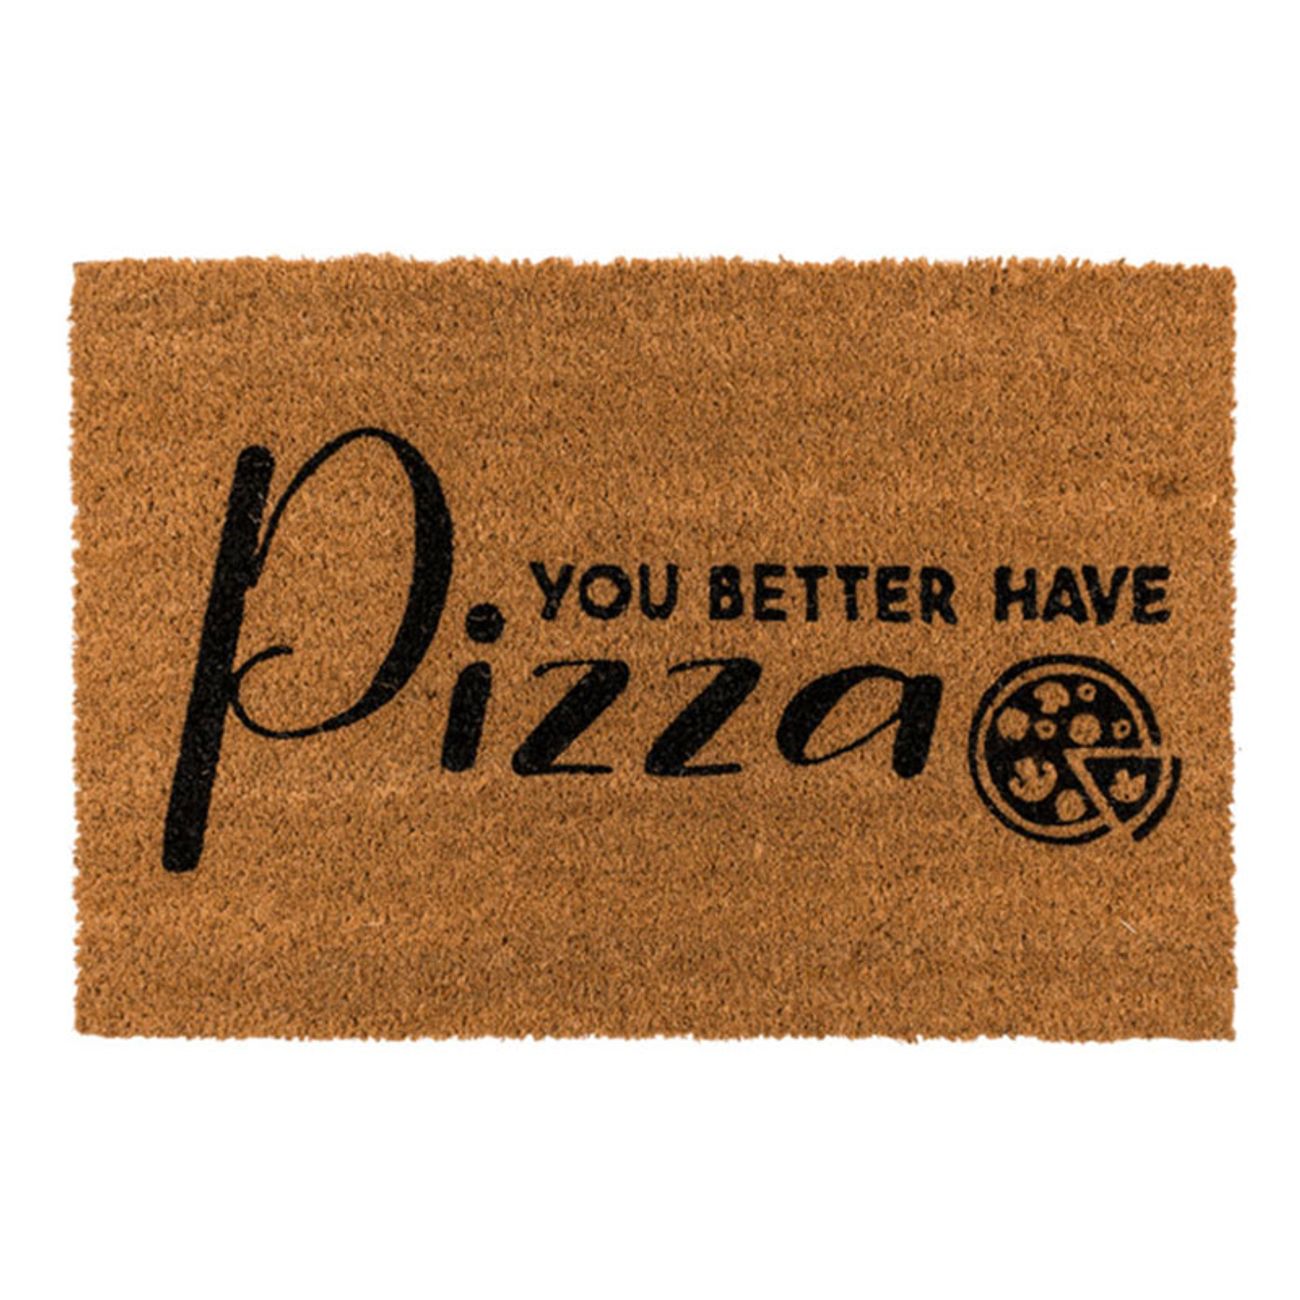 dorrmatta-you-better-have-pizza-76257-1